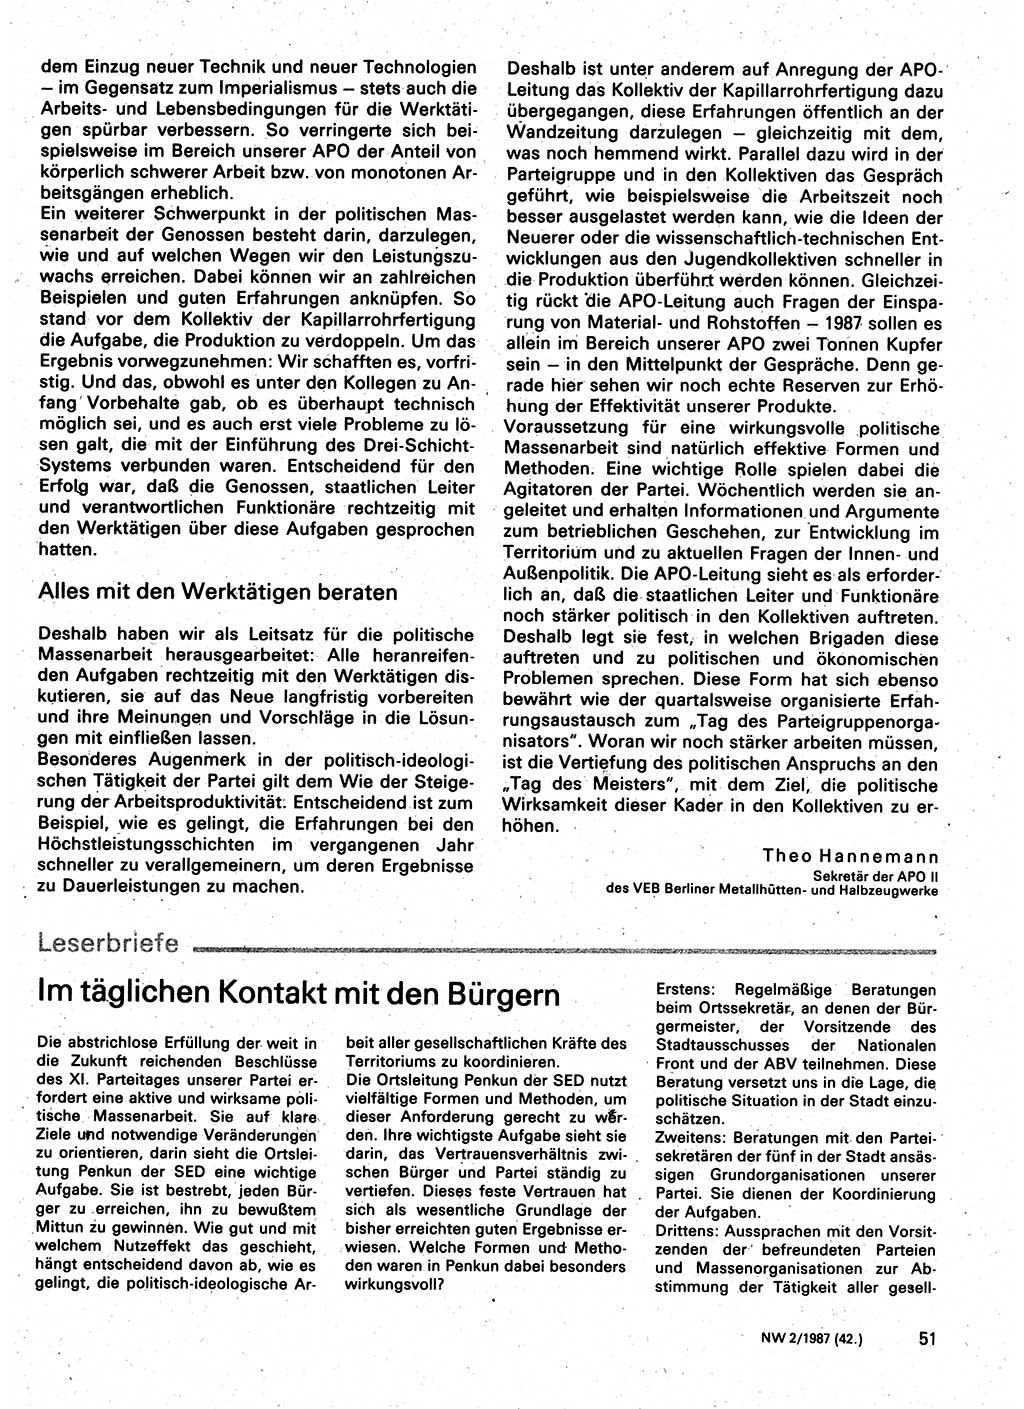 Neuer Weg (NW), Organ des Zentralkomitees (ZK) der SED (Sozialistische Einheitspartei Deutschlands) für Fragen des Parteilebens, 42. Jahrgang [Deutsche Demokratische Republik (DDR)] 1987, Seite 51 (NW ZK SED DDR 1987, S. 51)